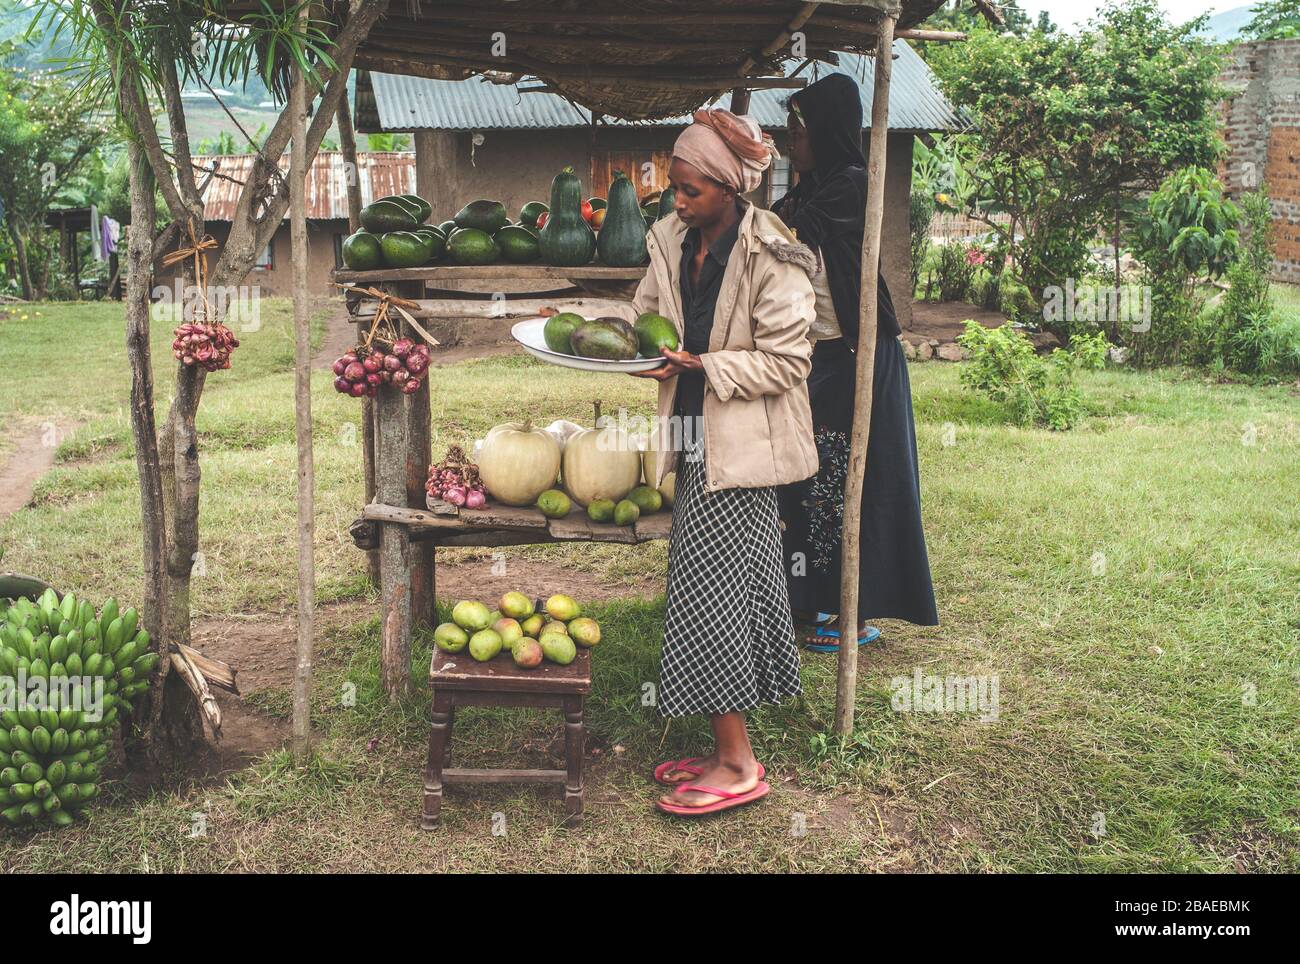 Kasese, Uganda - 22. Juli 2011: Zwei junge schwarze Frauen, die Obst auf einem Markt verkaufen oder im ländlichen Afrika stehen. Stockfoto